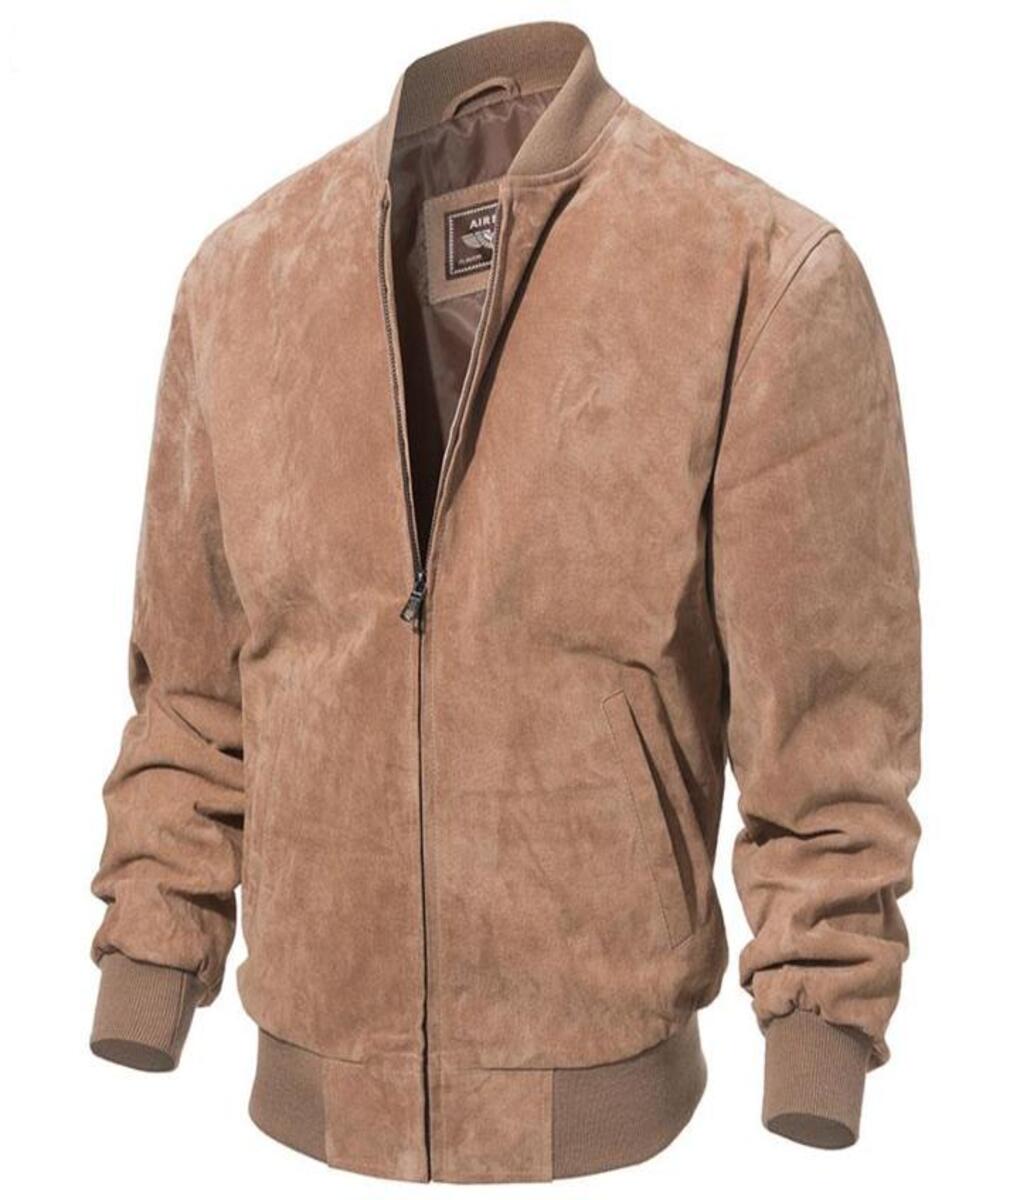 camel_brown_bomber_leather_jacket_for_men